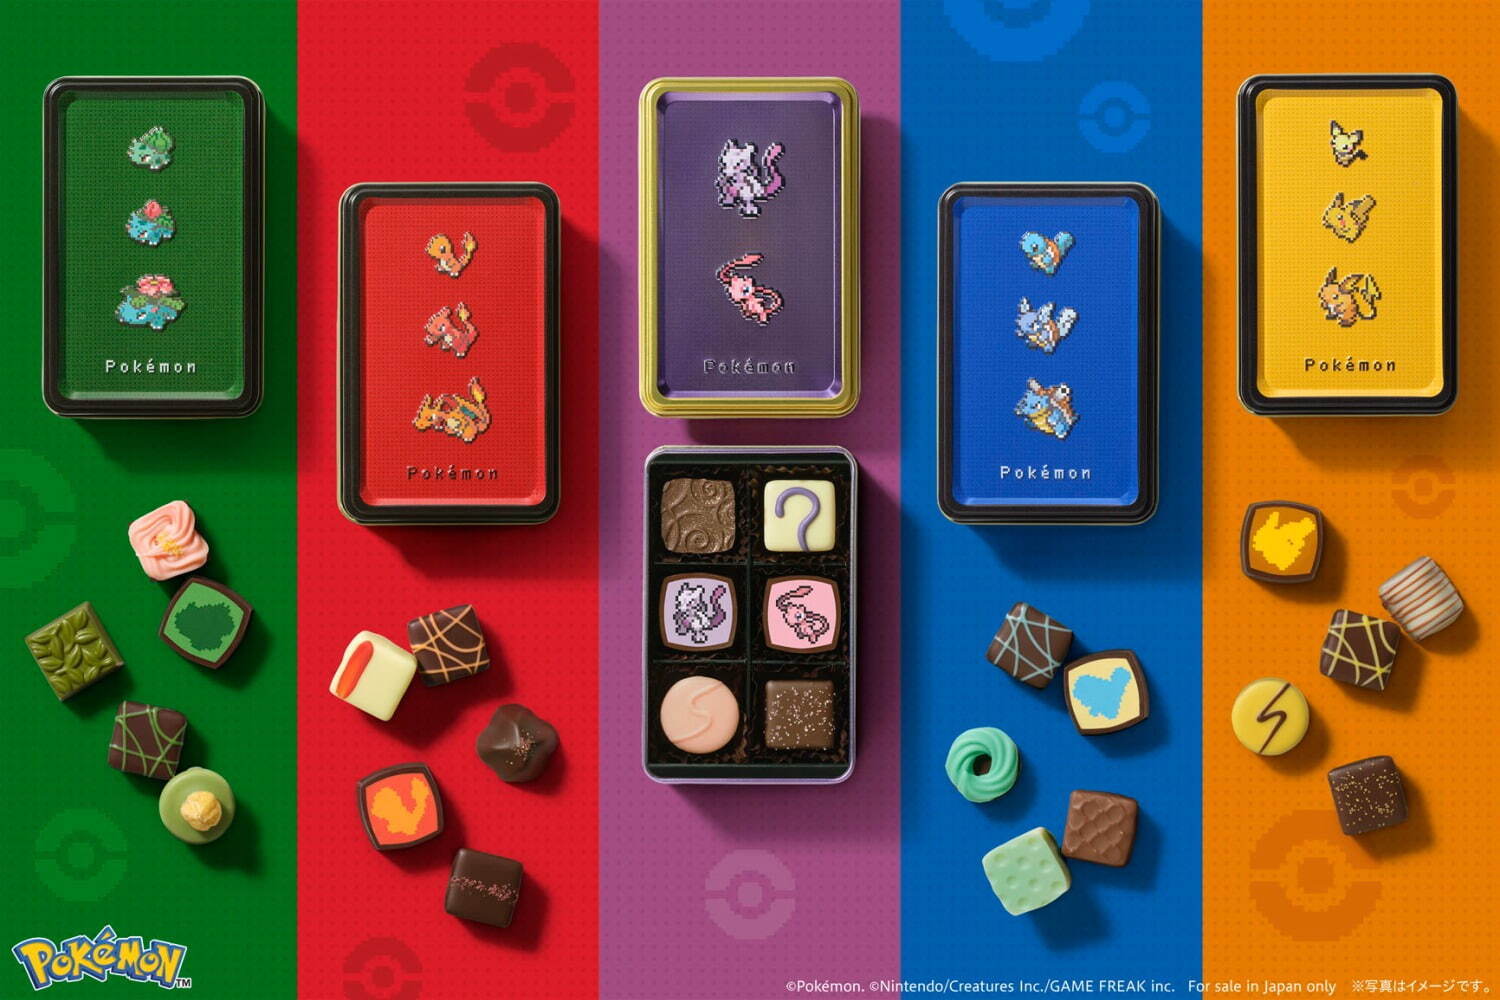 ポケモン meets メリーチョコレート アソートボックス(みず) 6個入